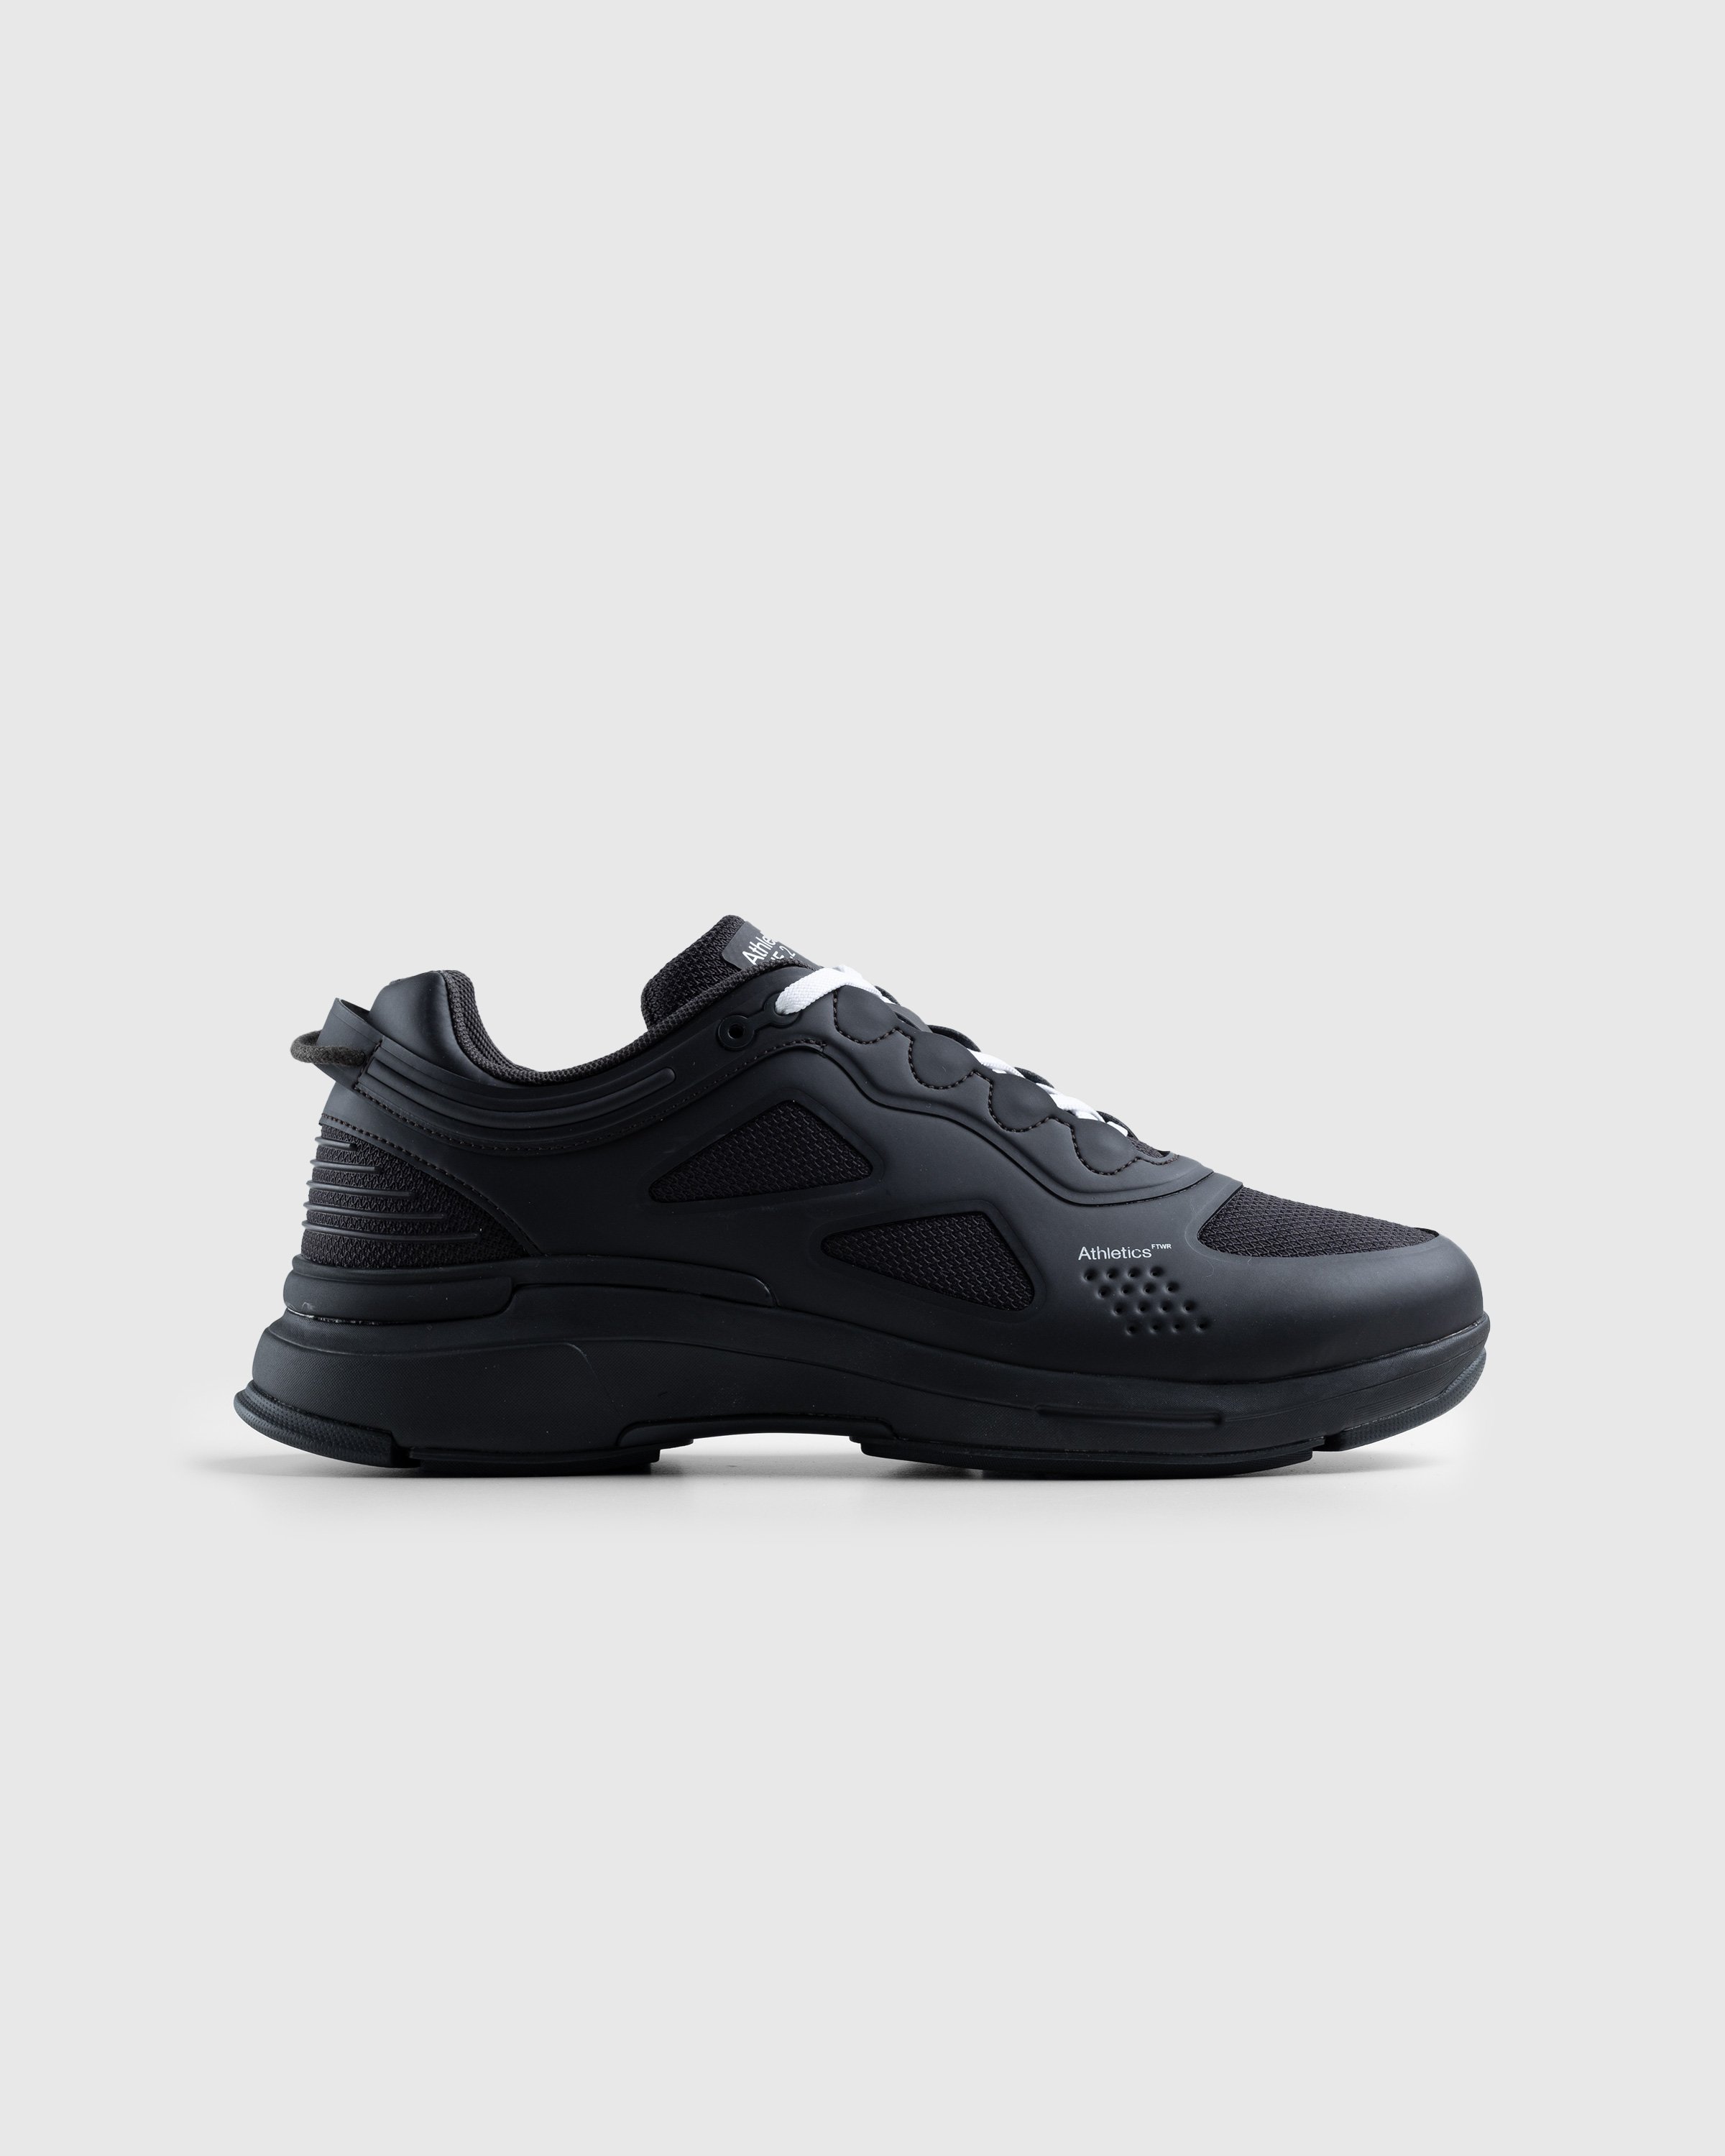 Athletics Footwear - One.2 Black - Footwear - Black - Image 1